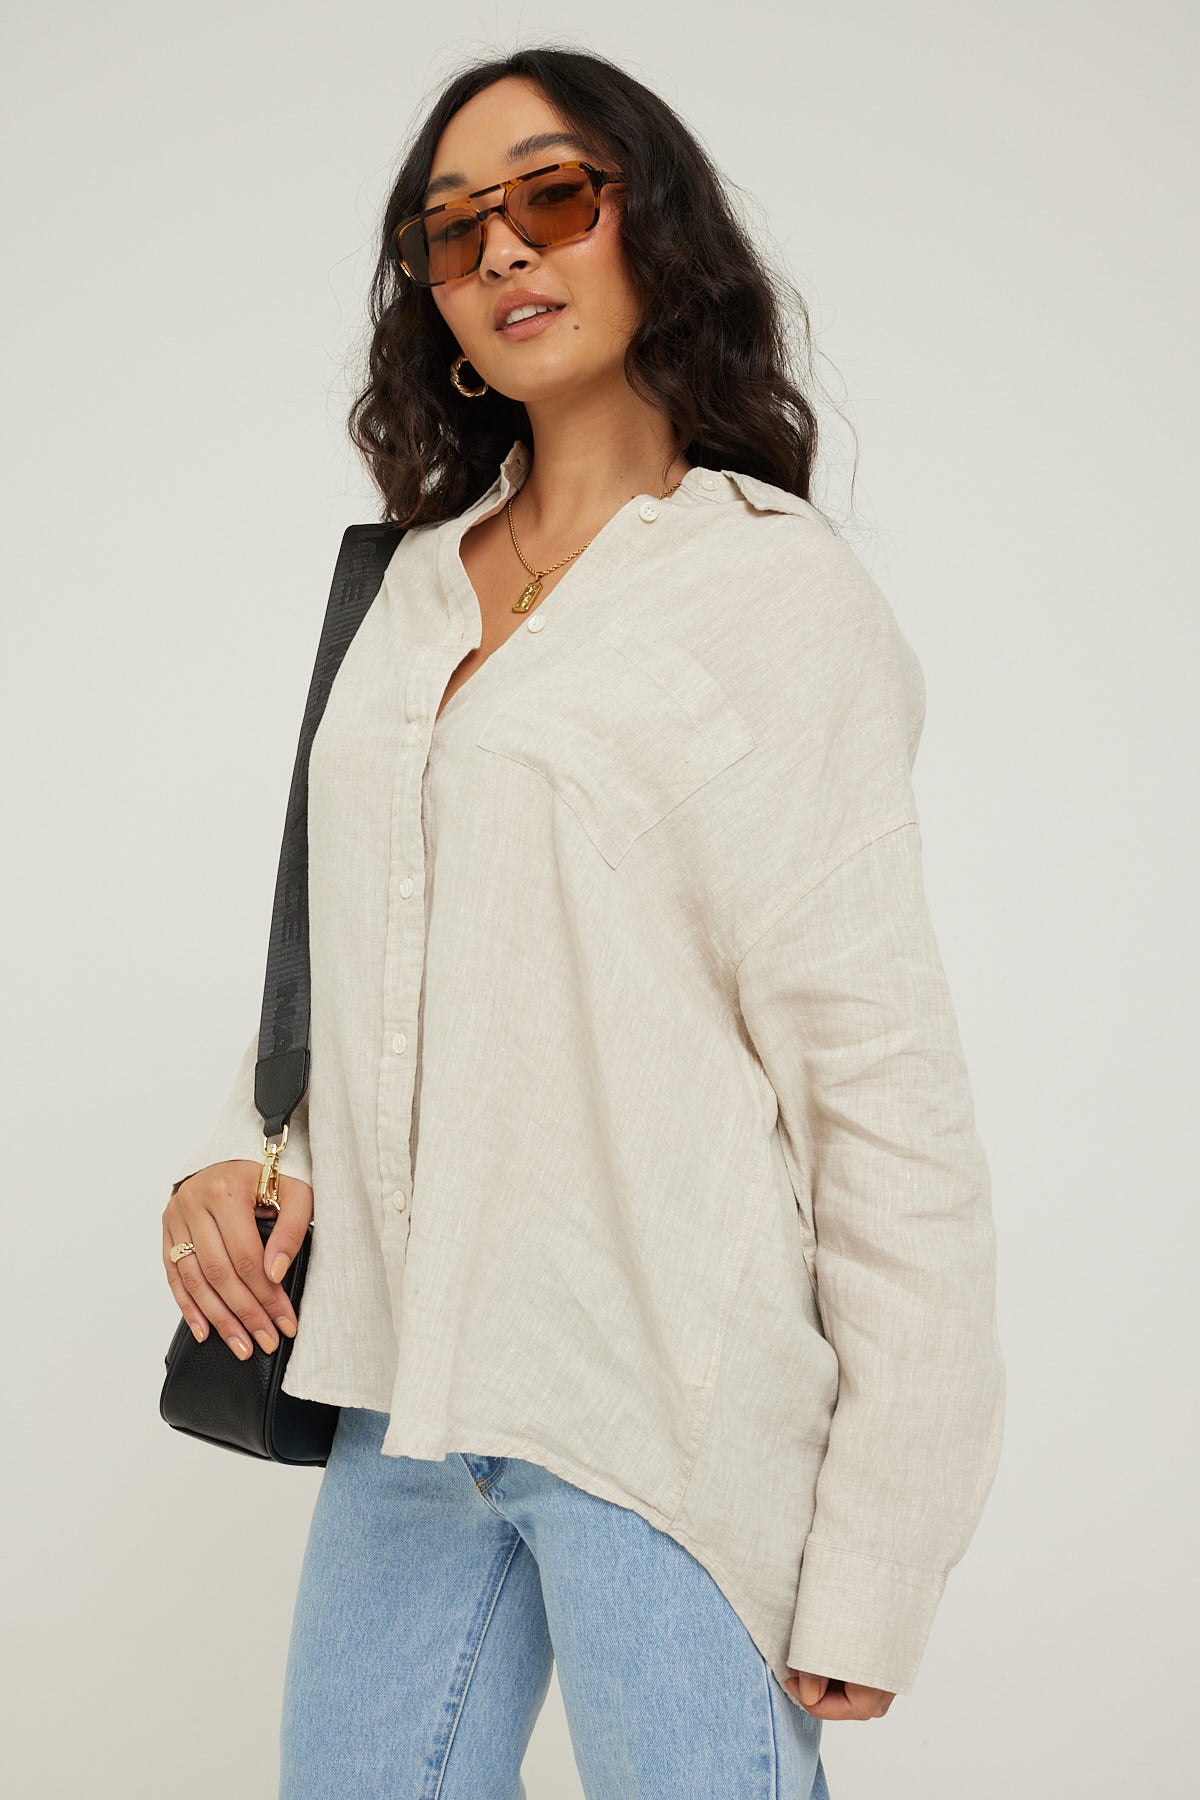 Academy Brand Hampton Womens Linen Shirt Oatmeal